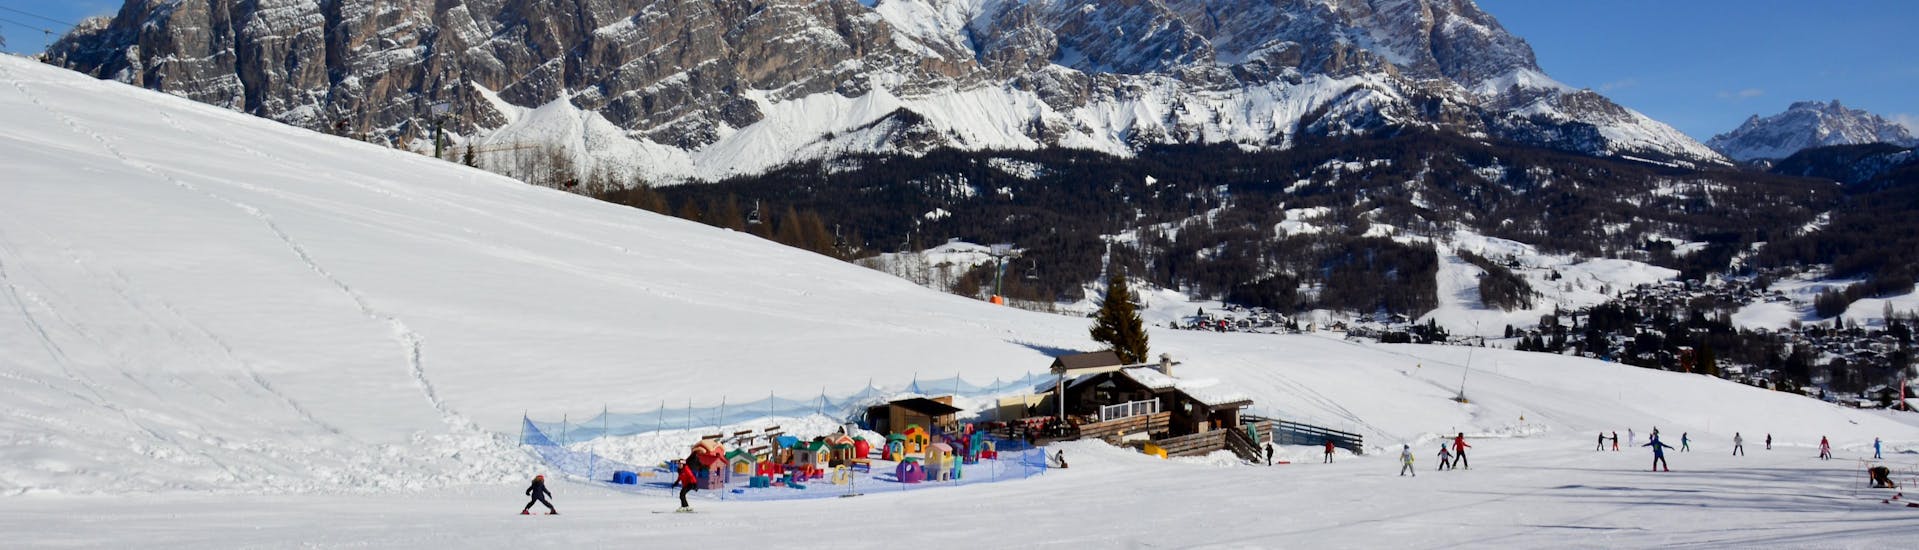 Blick auf ein Kinderland in Alleghe im Skigebiet Ski Civetta, wo die örtlichen Skischulen ihre Skikurse anbieten.